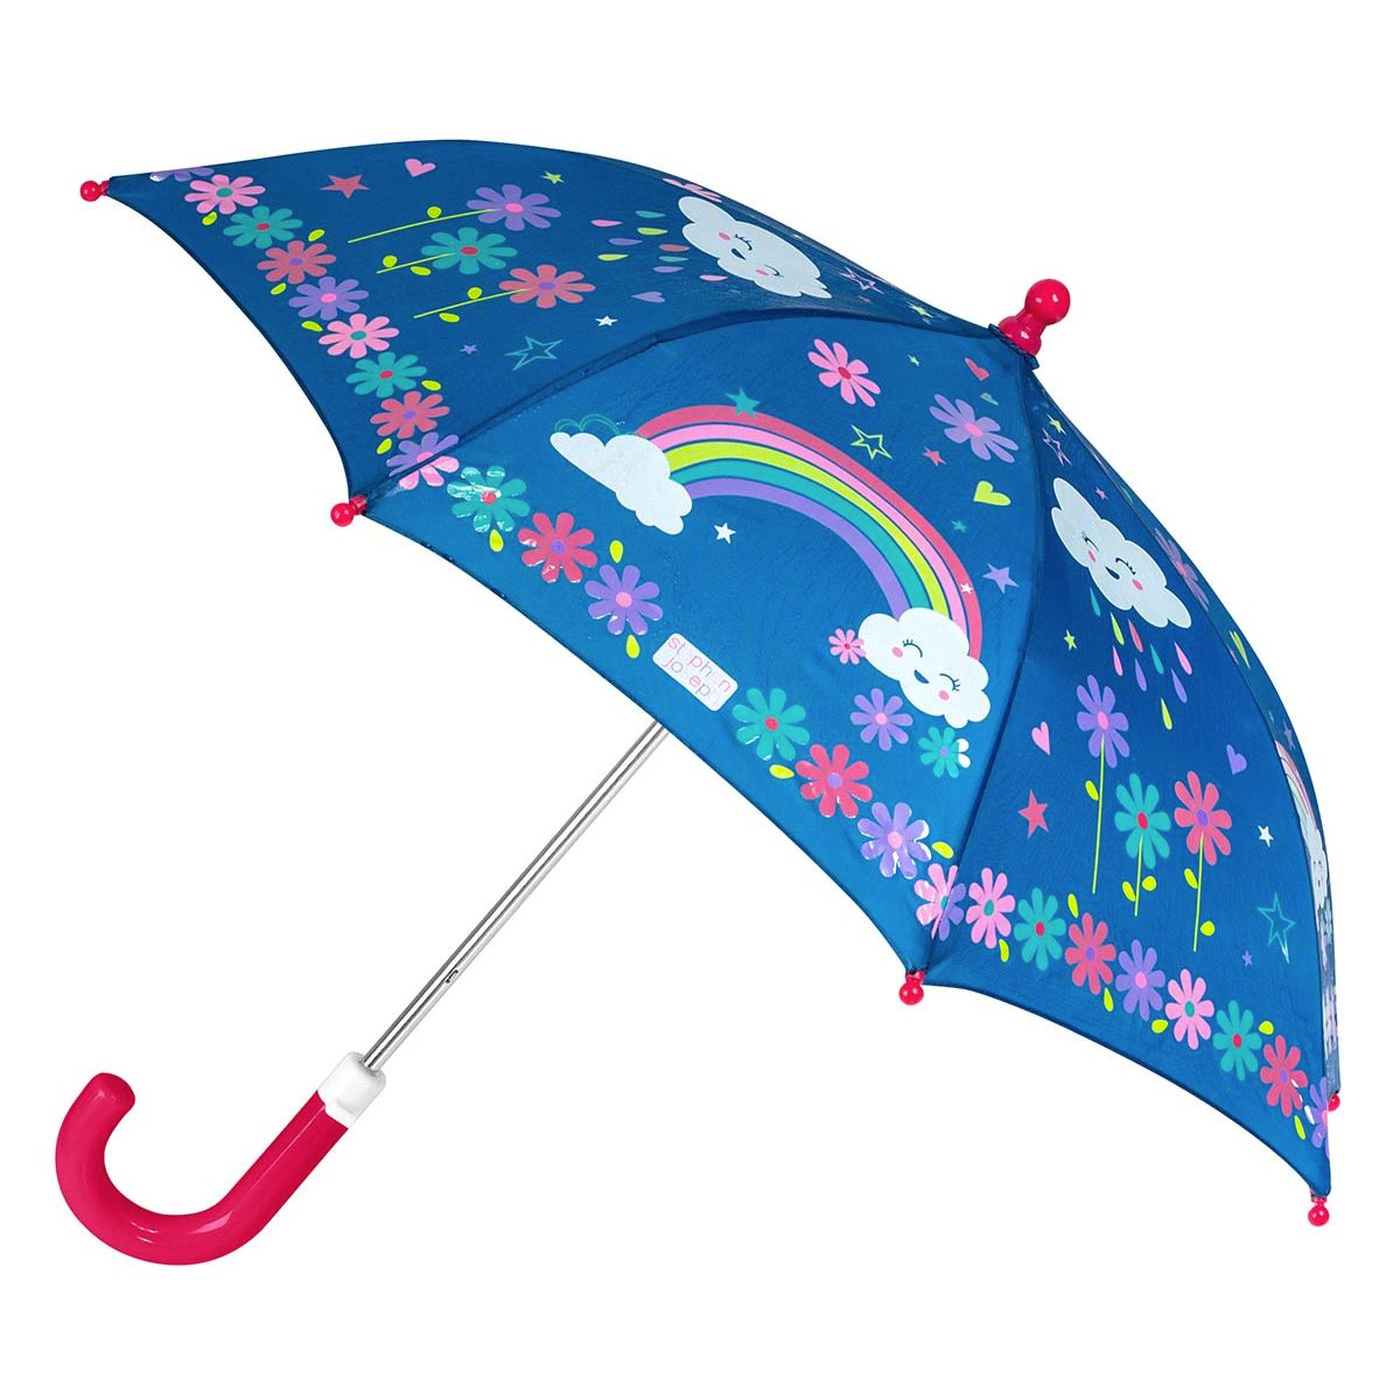  Stephen Joseph Renk Değiştiren Şemsiye  | Gökkuşağı